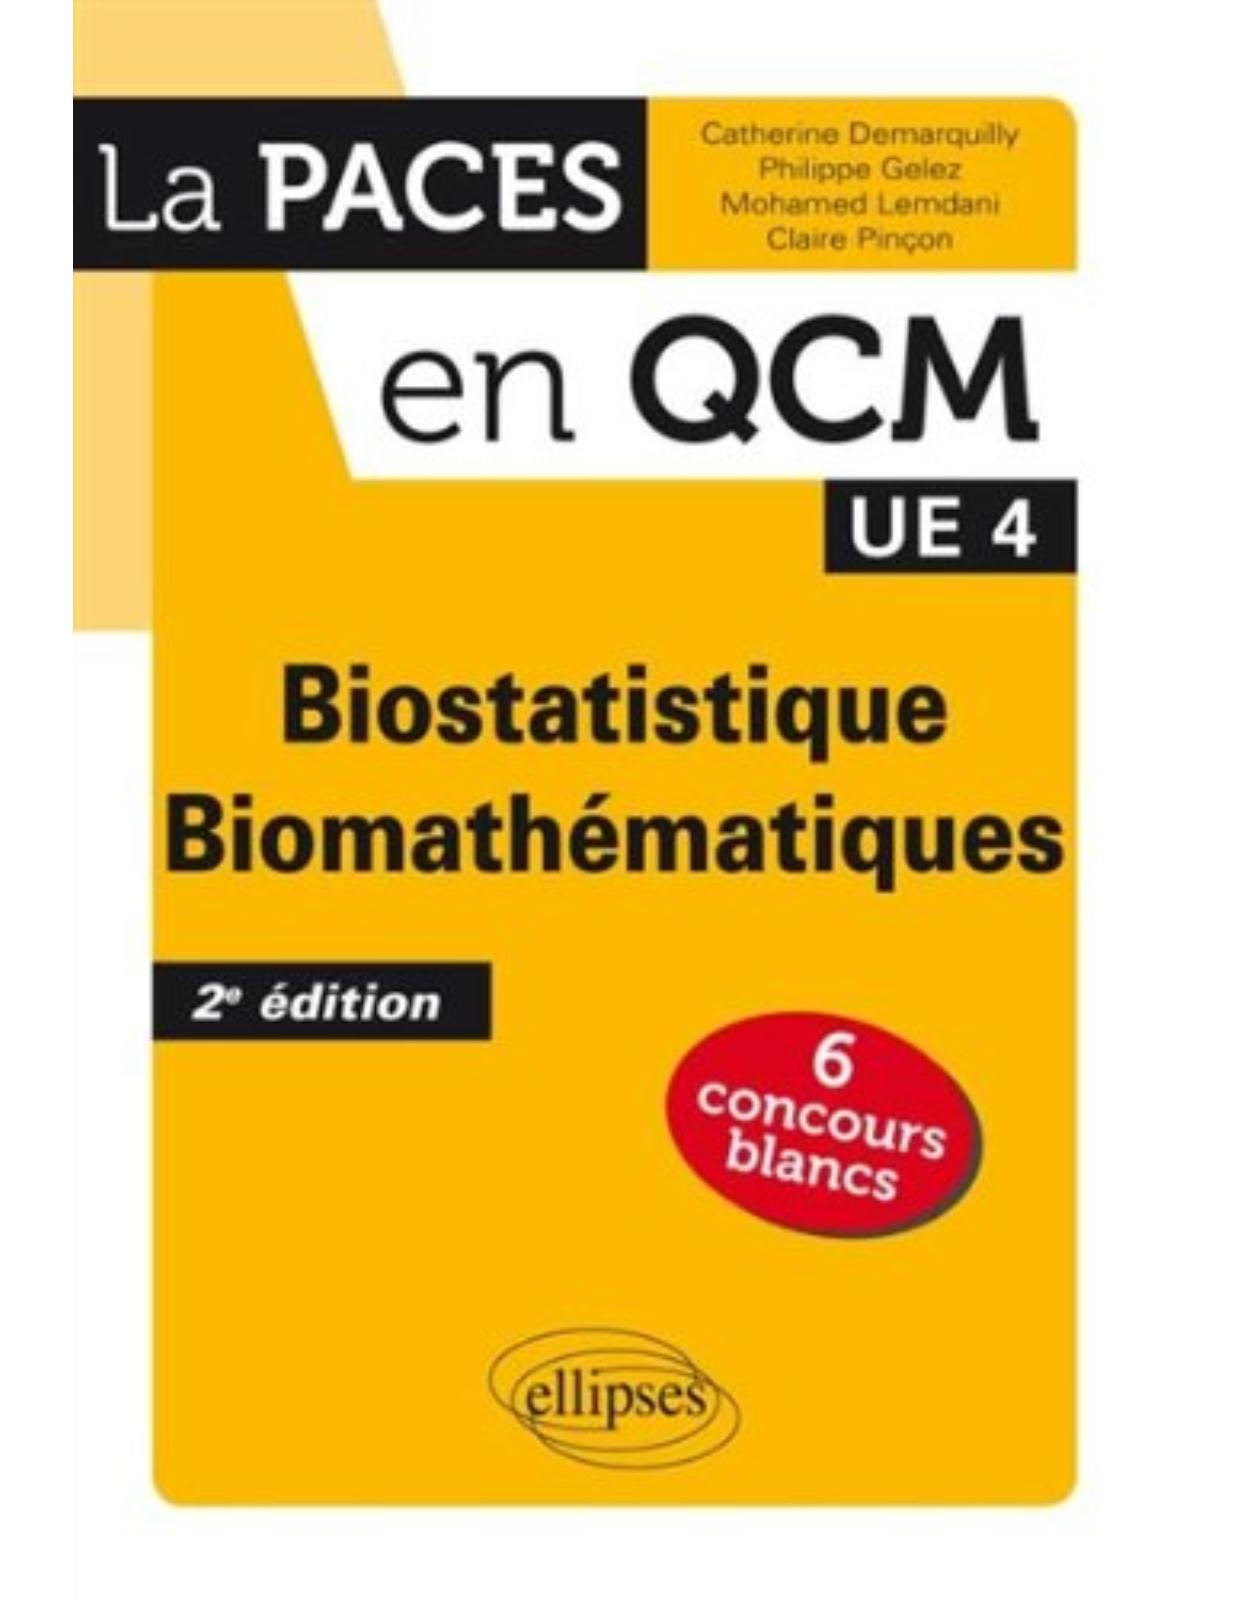 Biostatistique Biomathématiques UE4 La PACES en QCM 6 Concours Blancs 